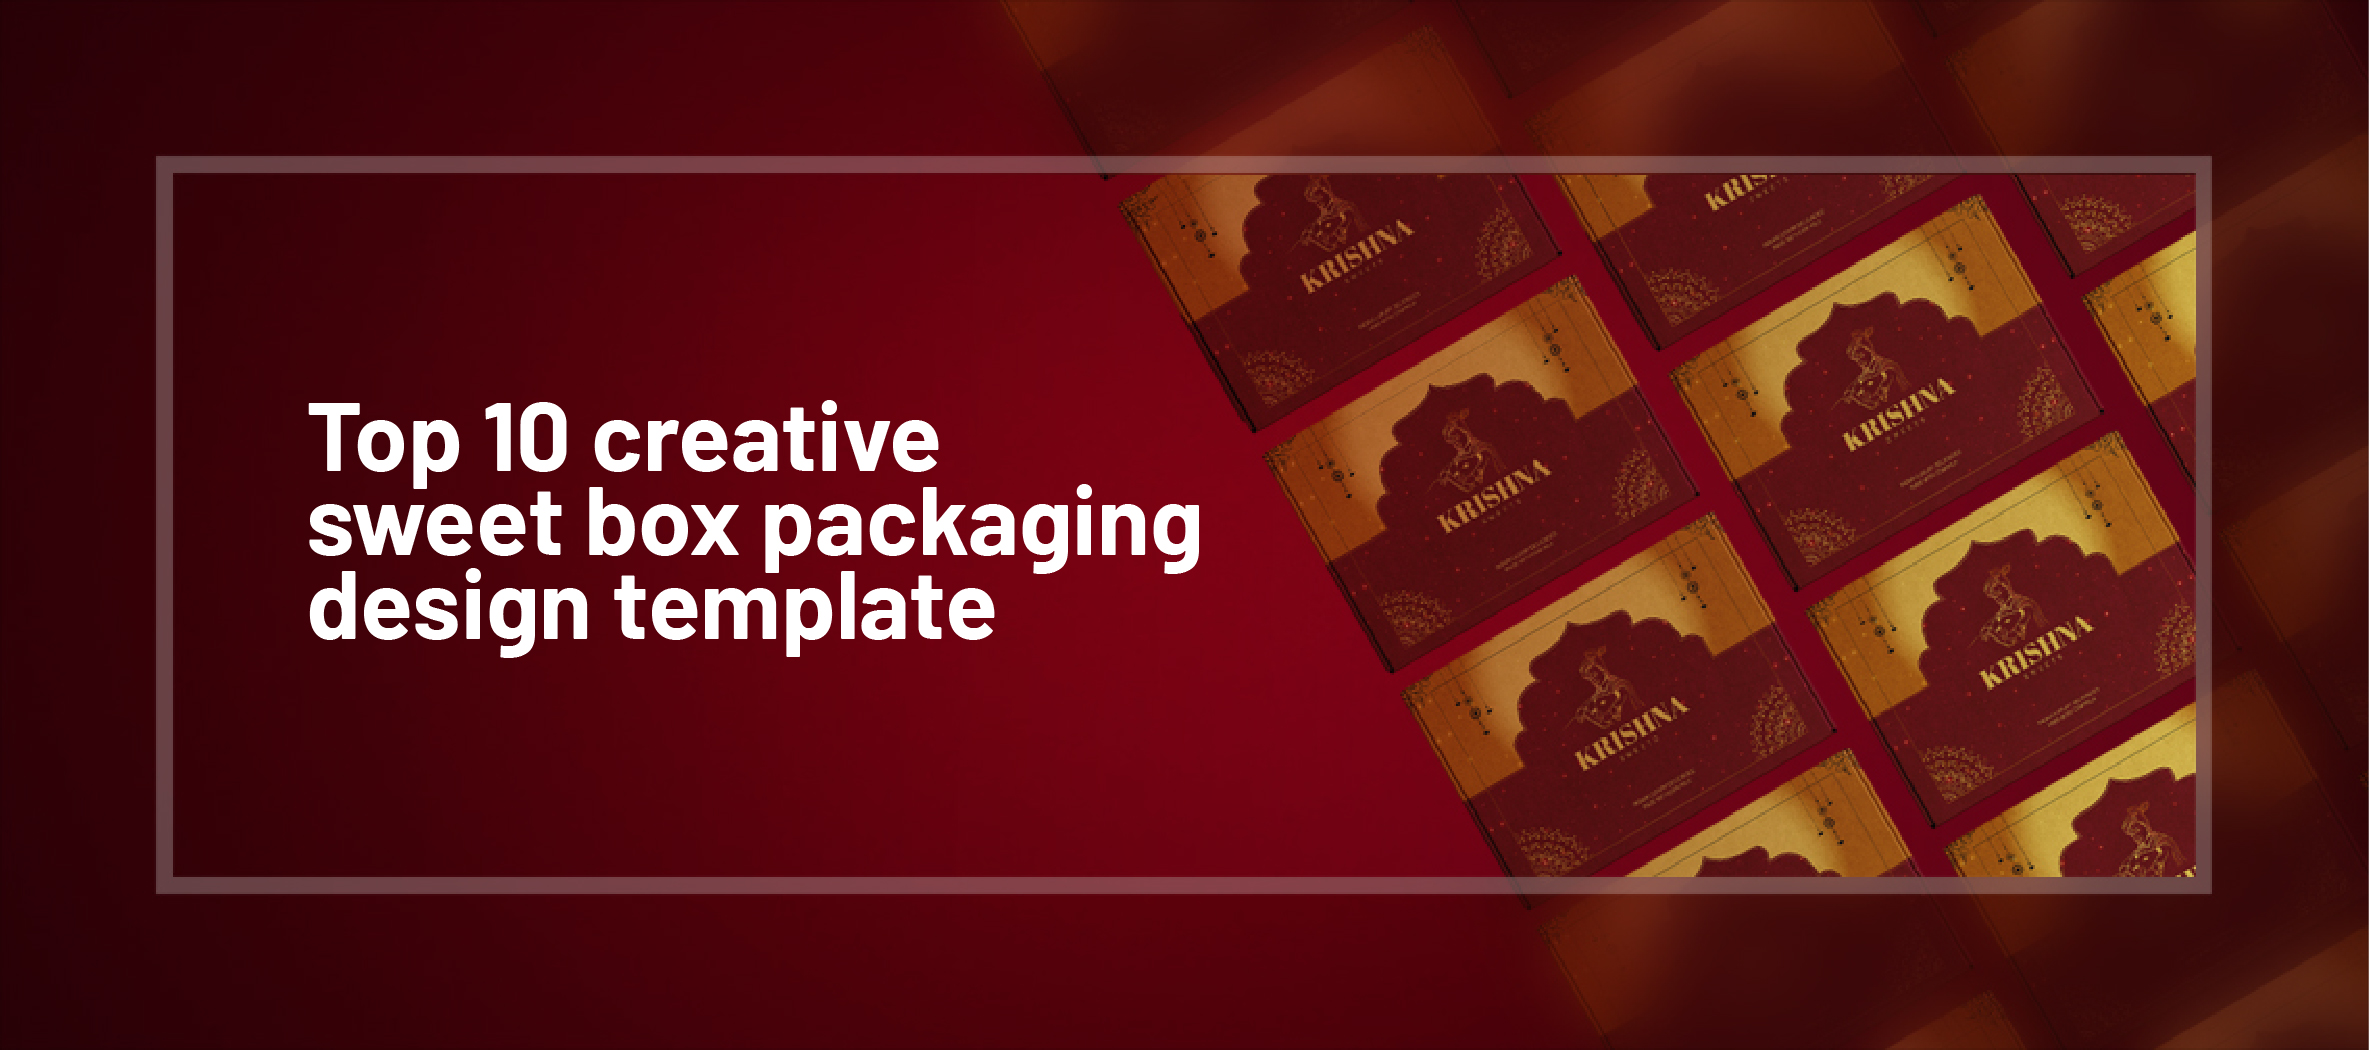 -
wo»
~
\

aN \

o RO J

~
4 i
R \ od
i I
hy \
\
= \

Top 10 creative \
sweet box packaging )

design template oa "~.